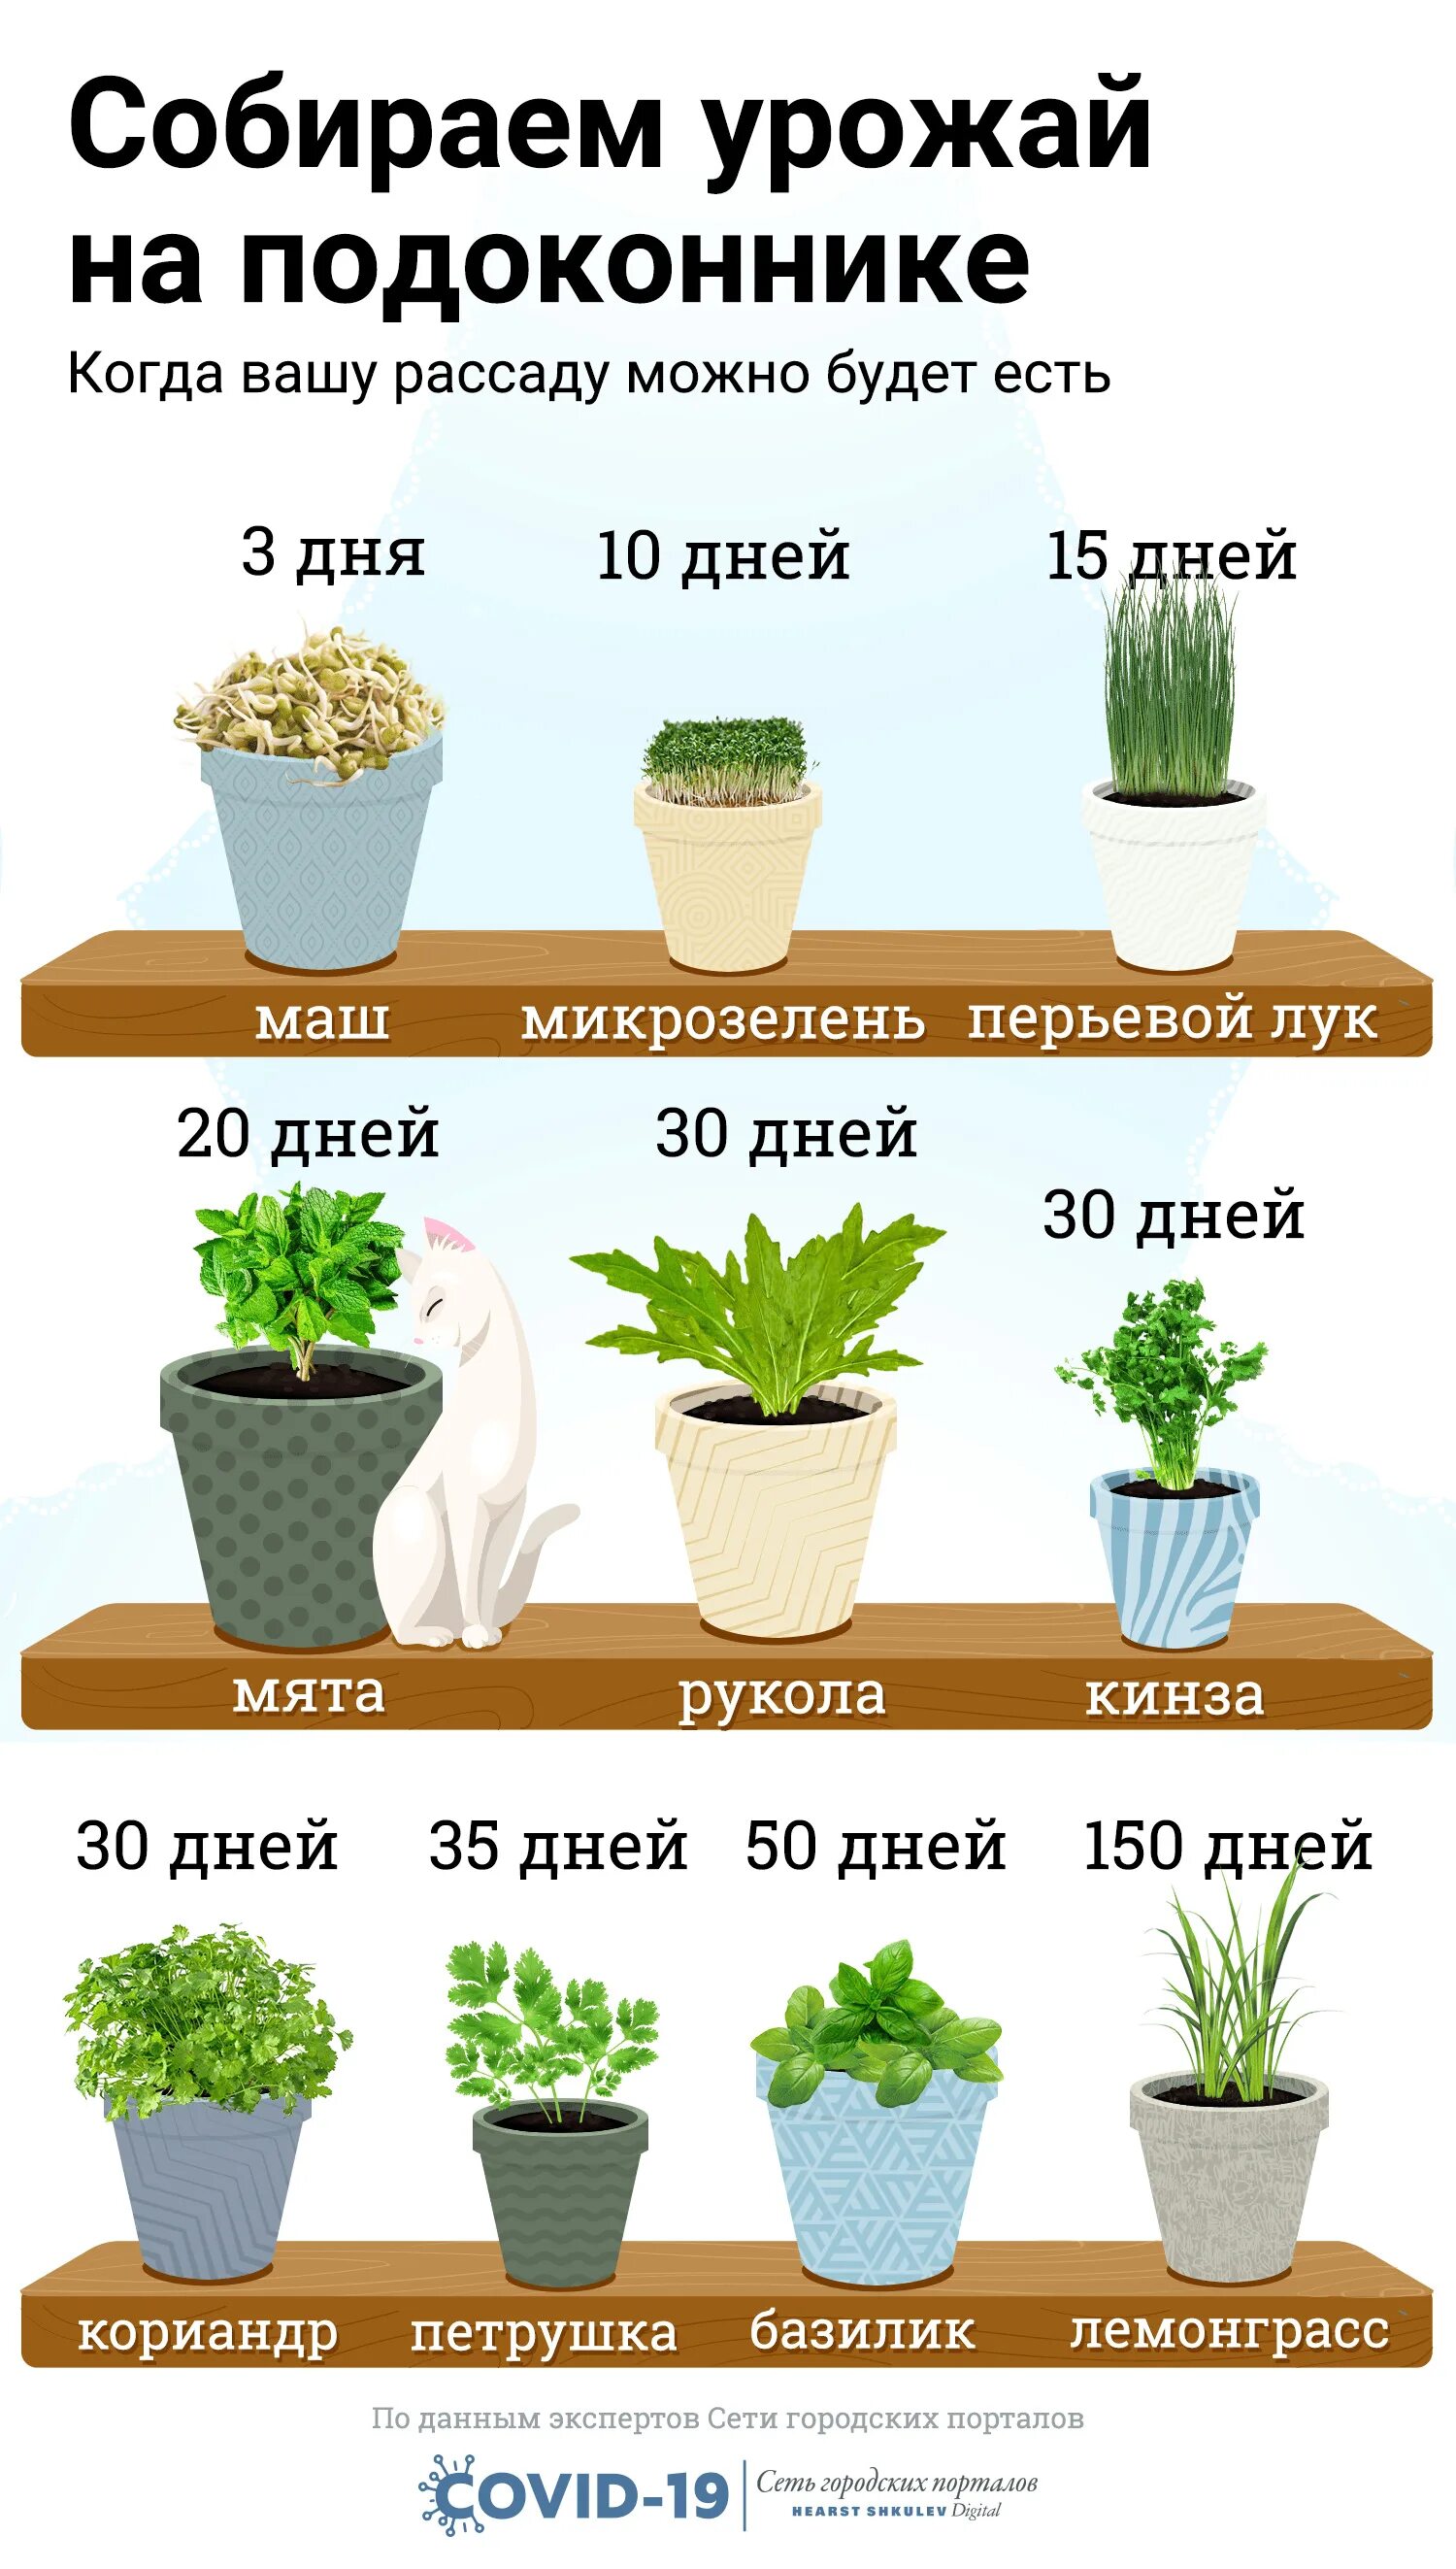 В домашних условиях можно нужно. Что можно вырастить дома. Какие растения можно вырастить в домашних условиях. Какое растение можно вырастить дома. Выращивать зелень дома круглый год.